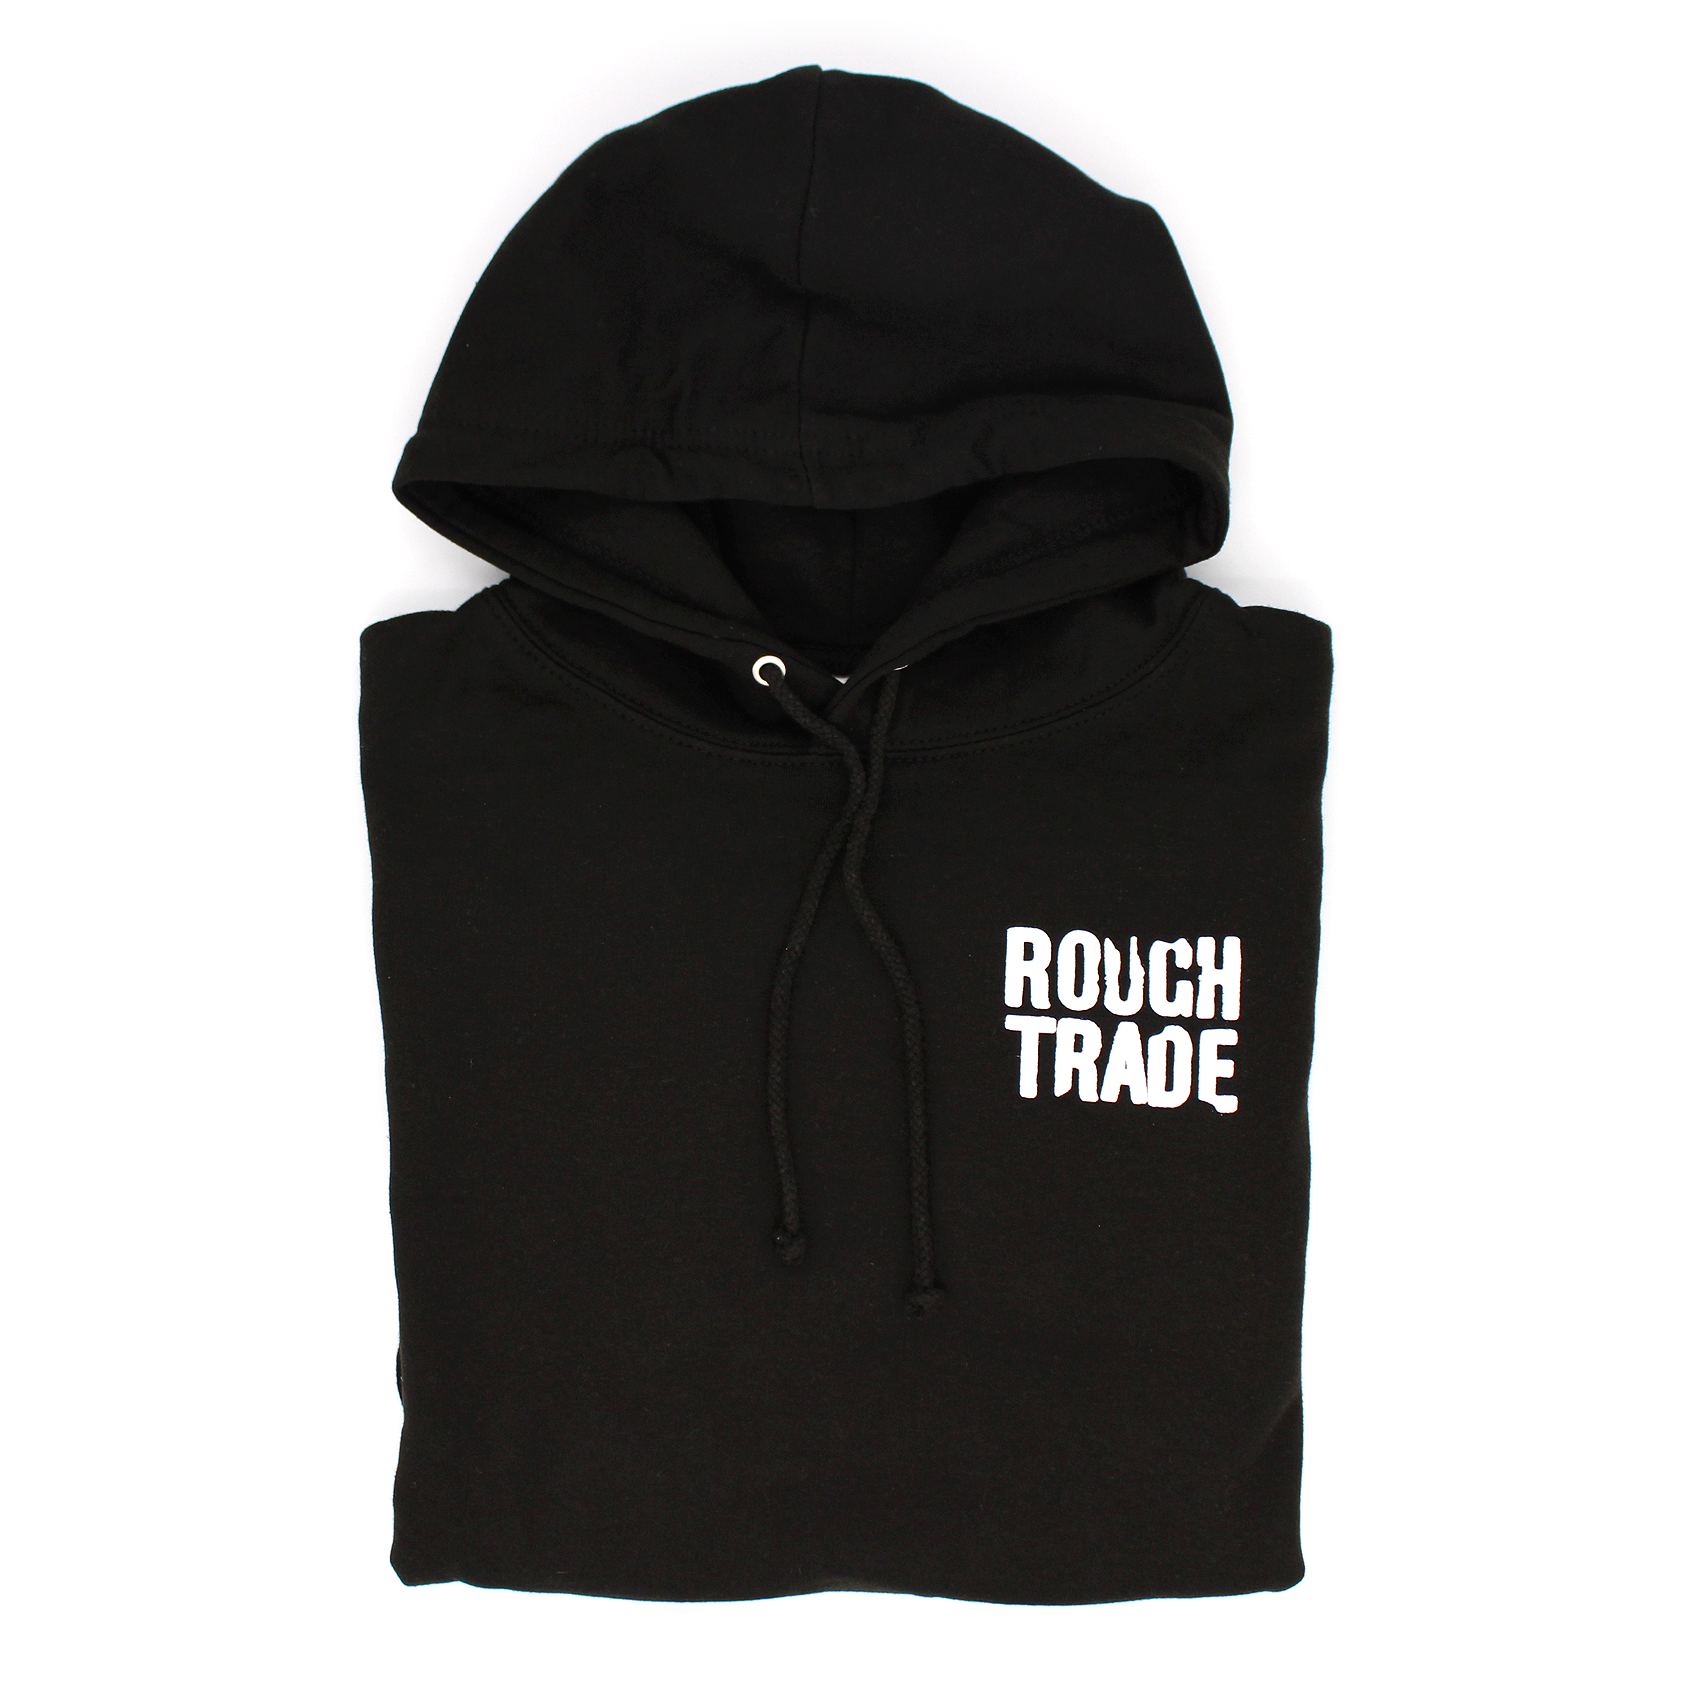 Album artwork for Album artwork for Rough Trade Hoodie by Rough Trade    by Rough Trade Hoodie - Rough Trade   